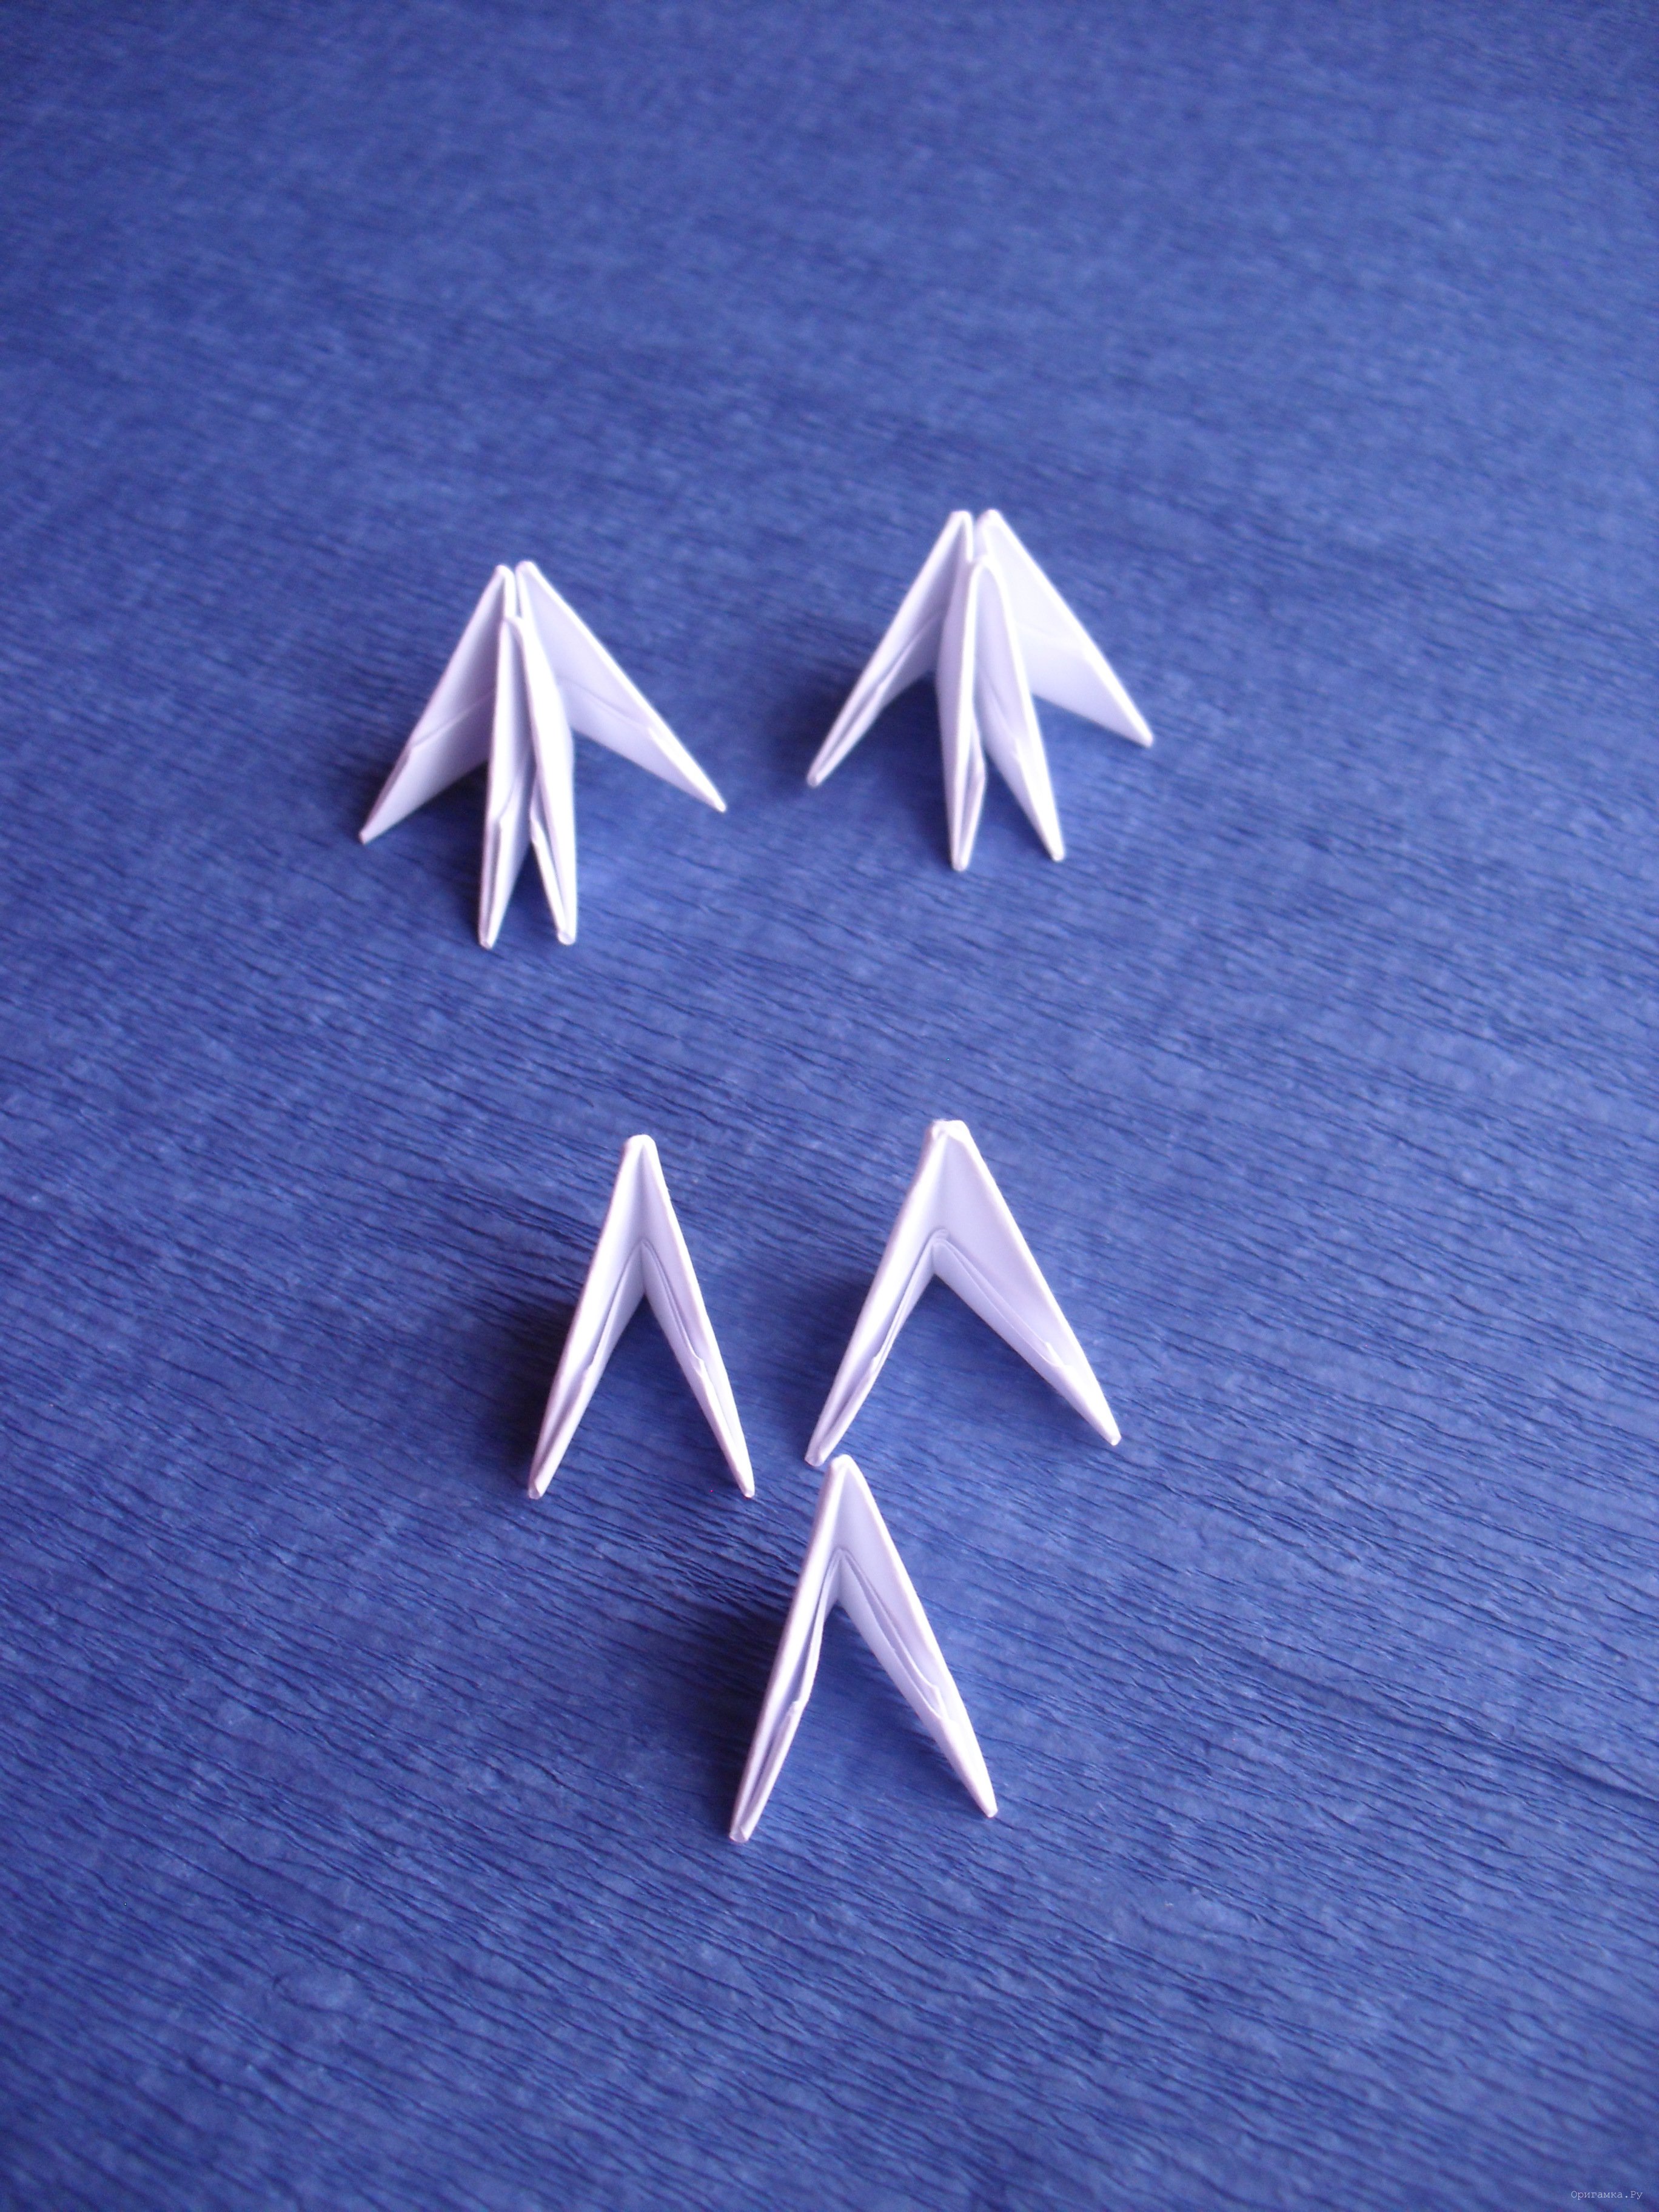 Новые работы в технике «Оригами китайское модульное»